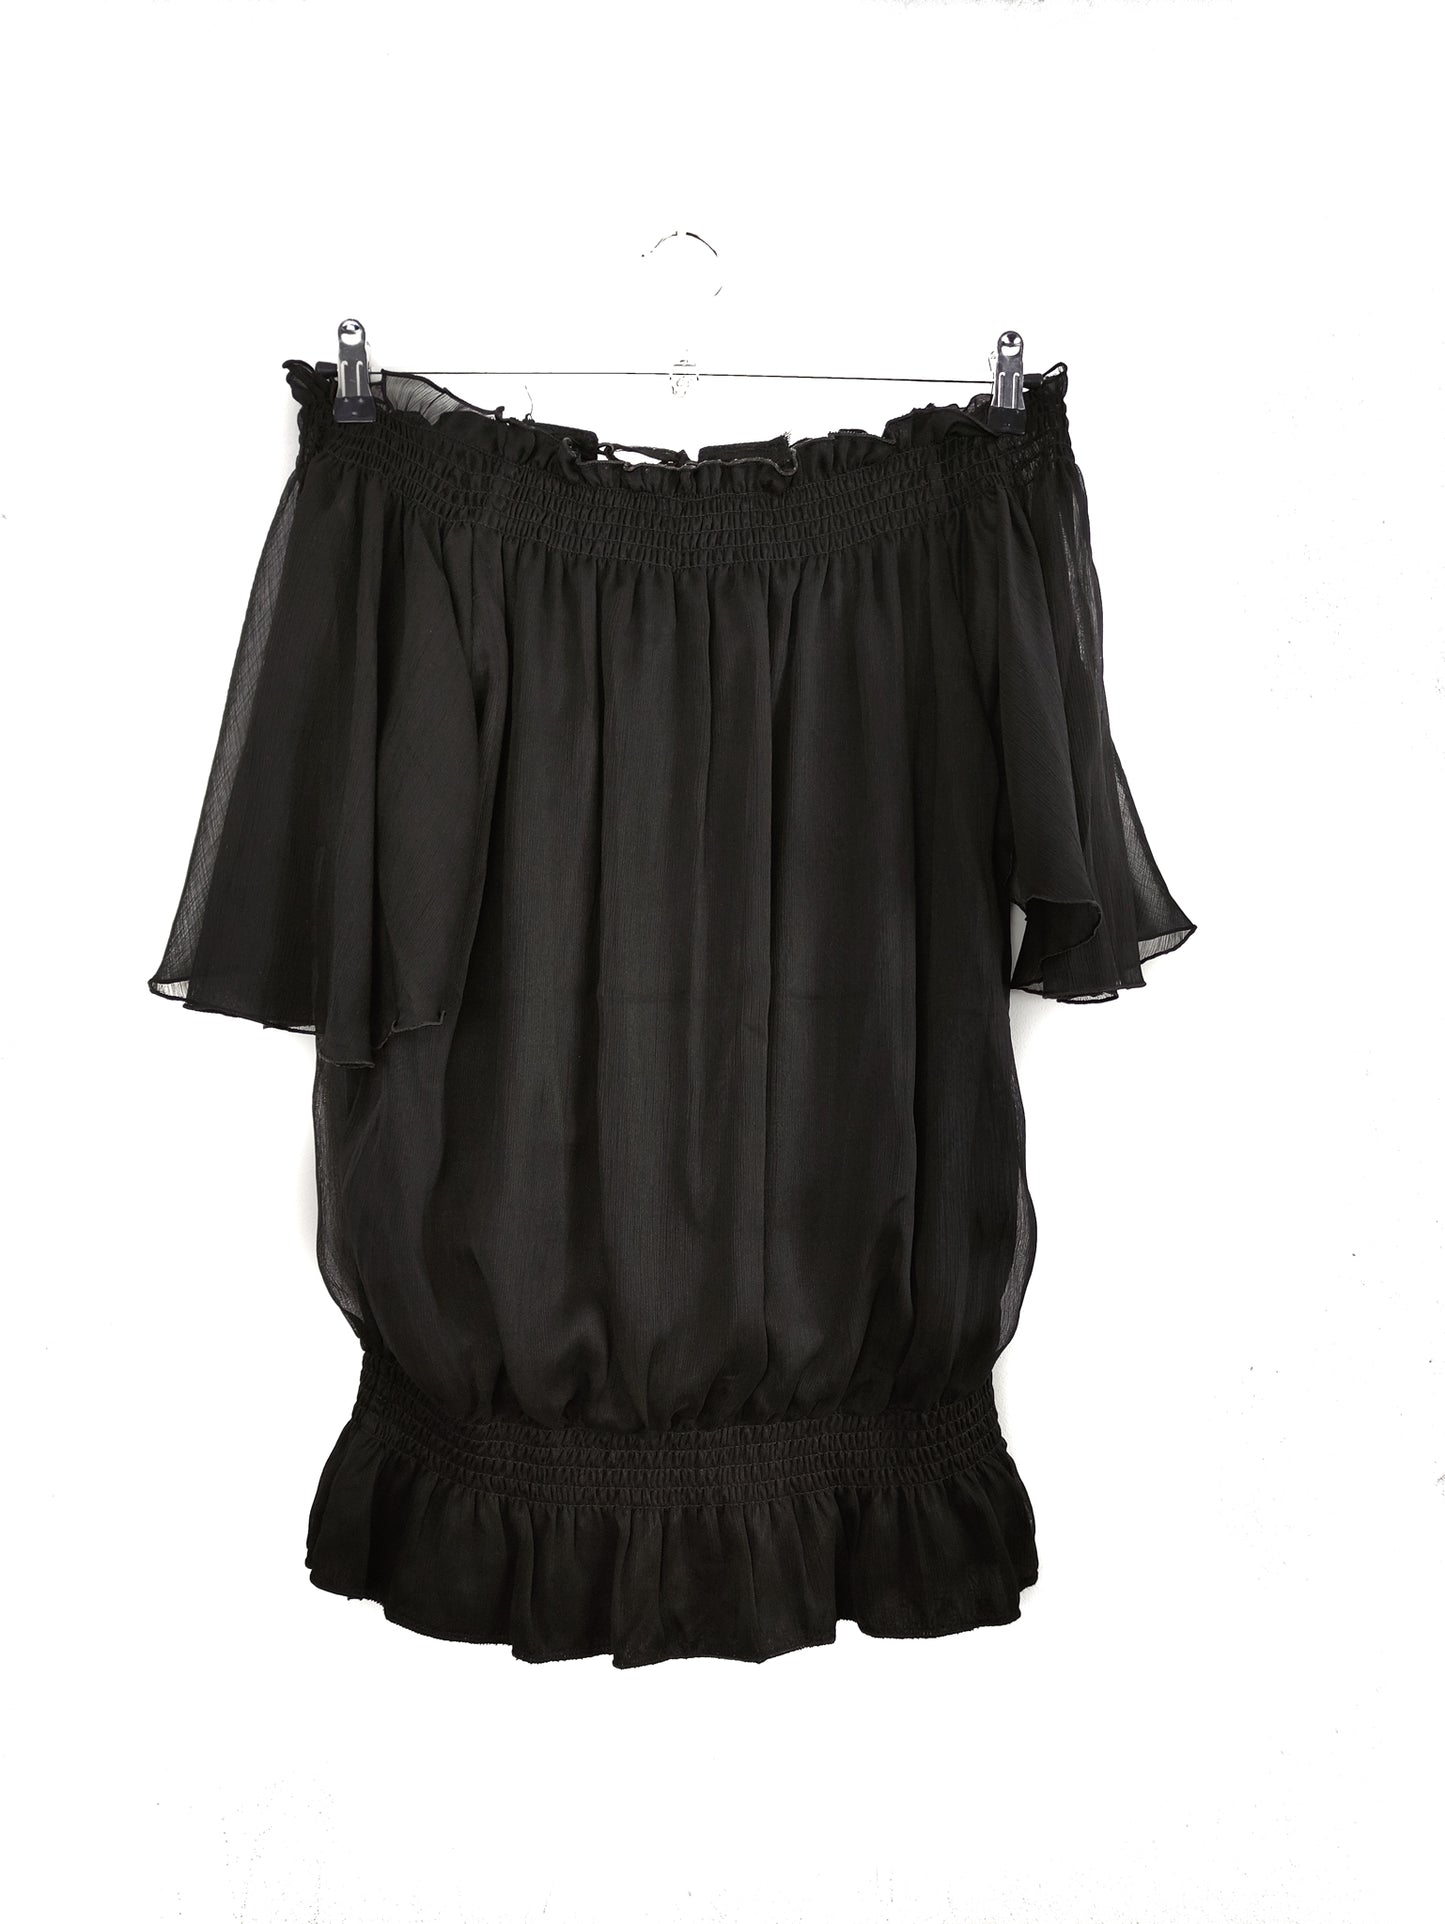 Γυναικεία Μπλούζα YENDI σε Μαύρο Χρώμα με Ιδιαίτερο σχέδιο (M/L)